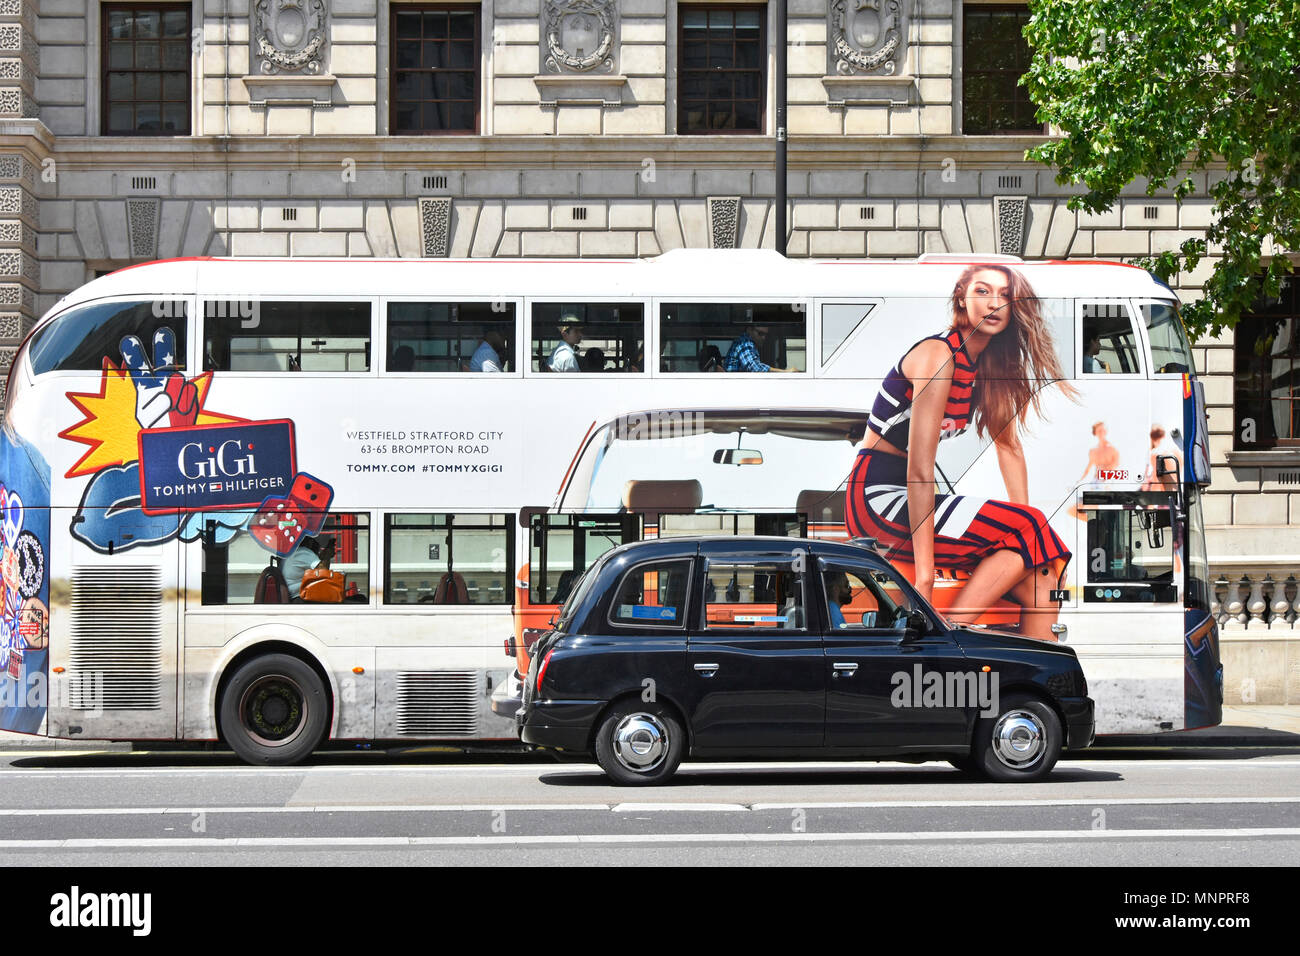 Whitehall London Street Scene black cab vorbei Anzeige Seite Blick auf die London öffentliche Verkehrsmittel Bus mit fashion model sitzen auf der Vorderseite des Taxi UK Stockfoto